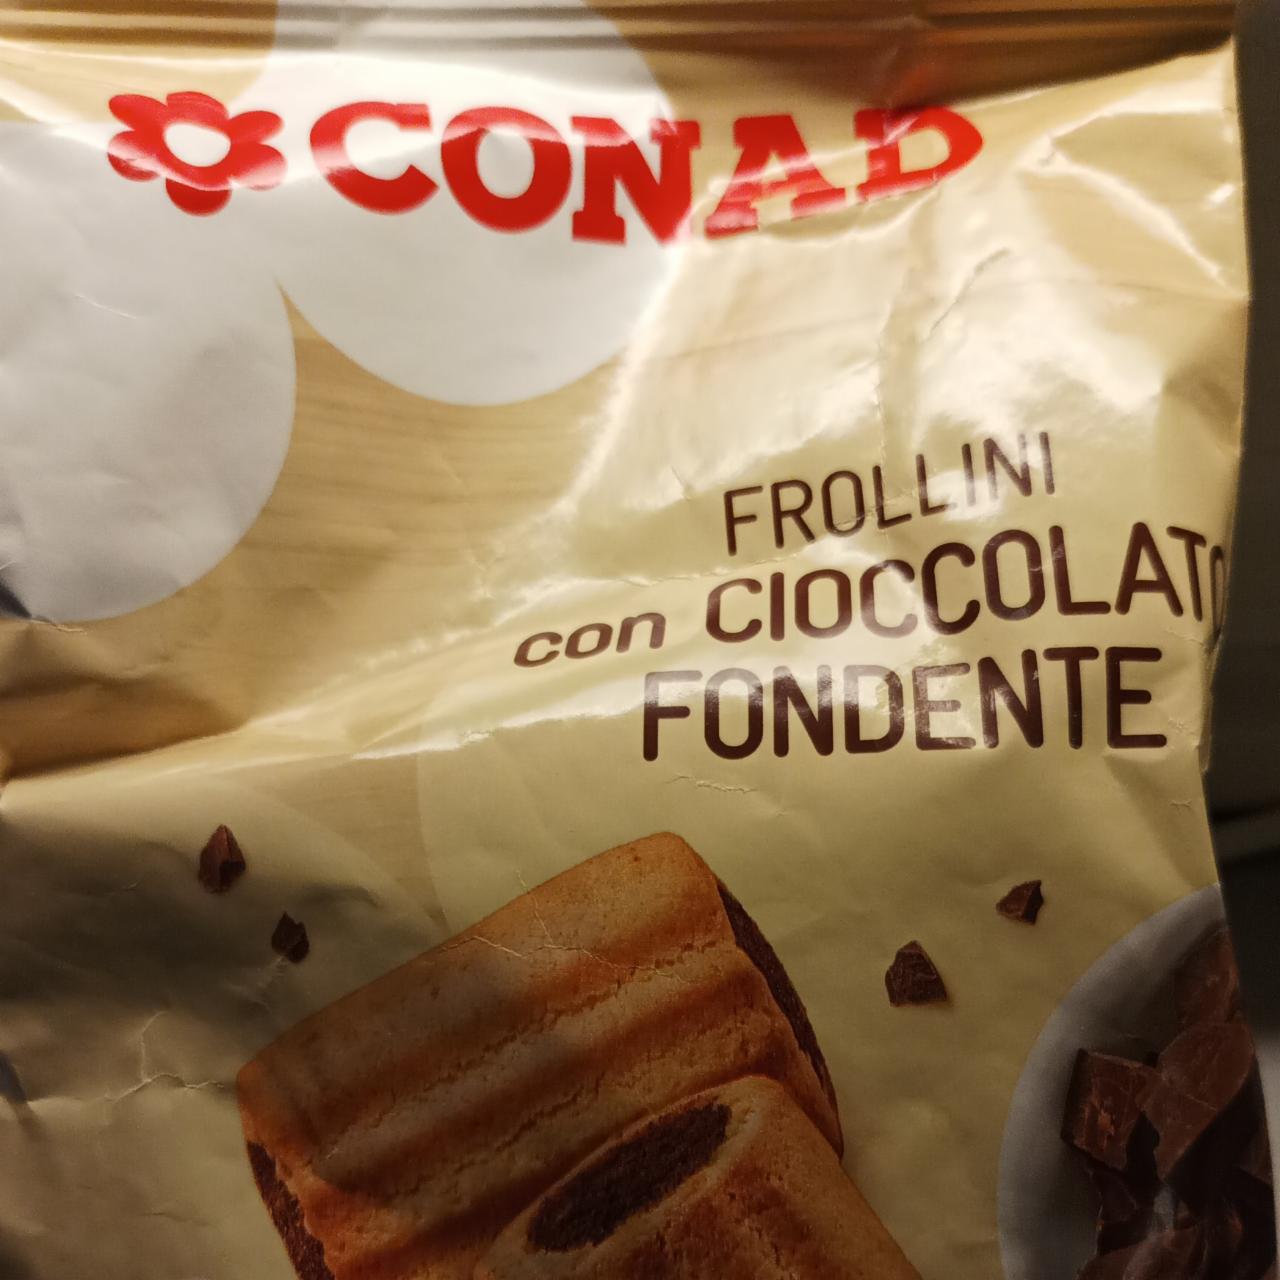 Fotografie - Frollini con cioccolato fondente Conad